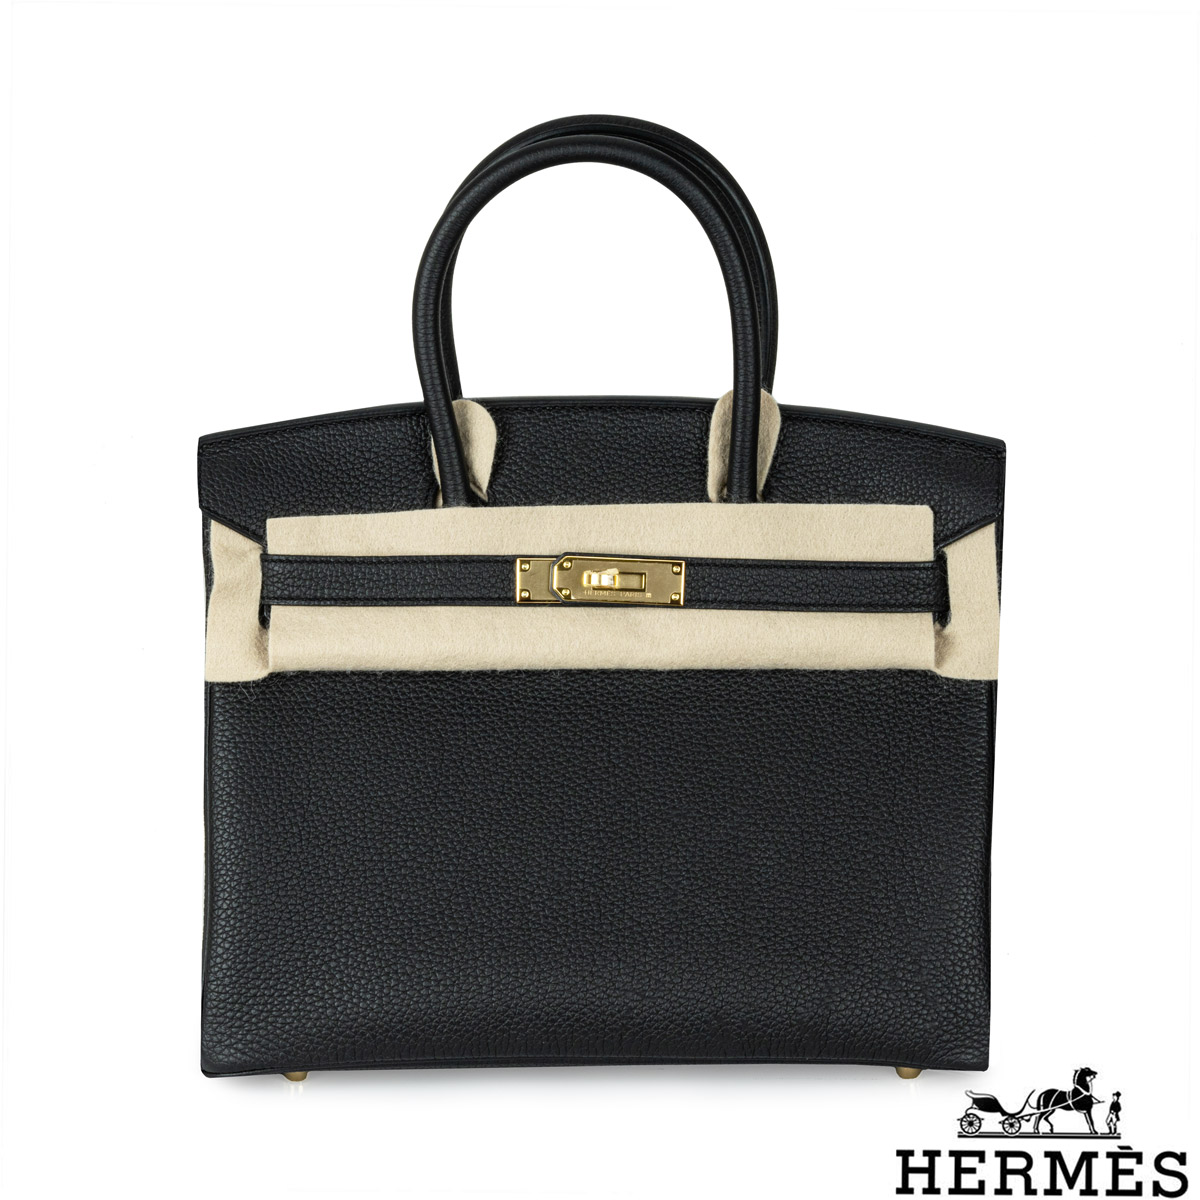 Hermès Birkin Shadow second hand prices